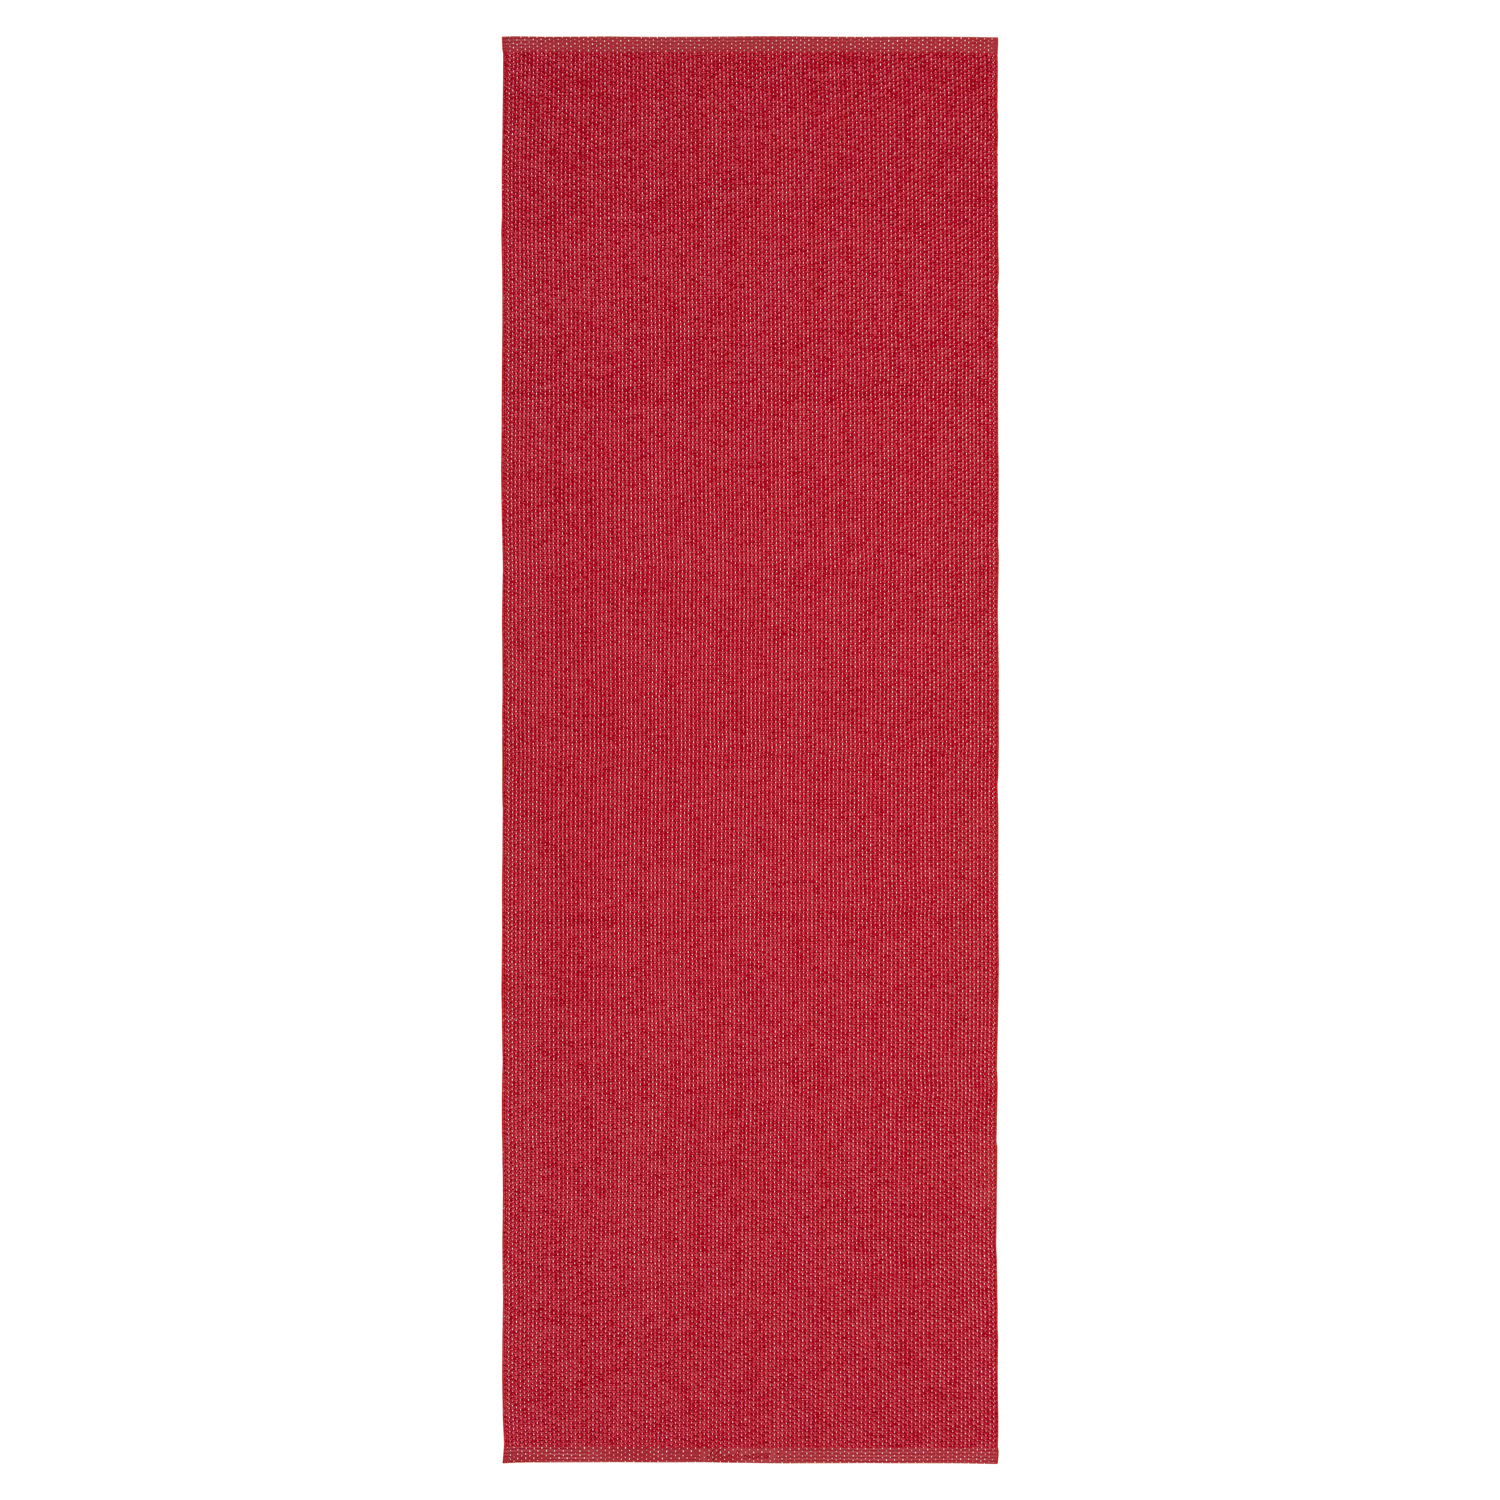 Horredsmattan Teppich Solo Red für Innen und Aussen Made in Sweden since 1956 UV-Beständig